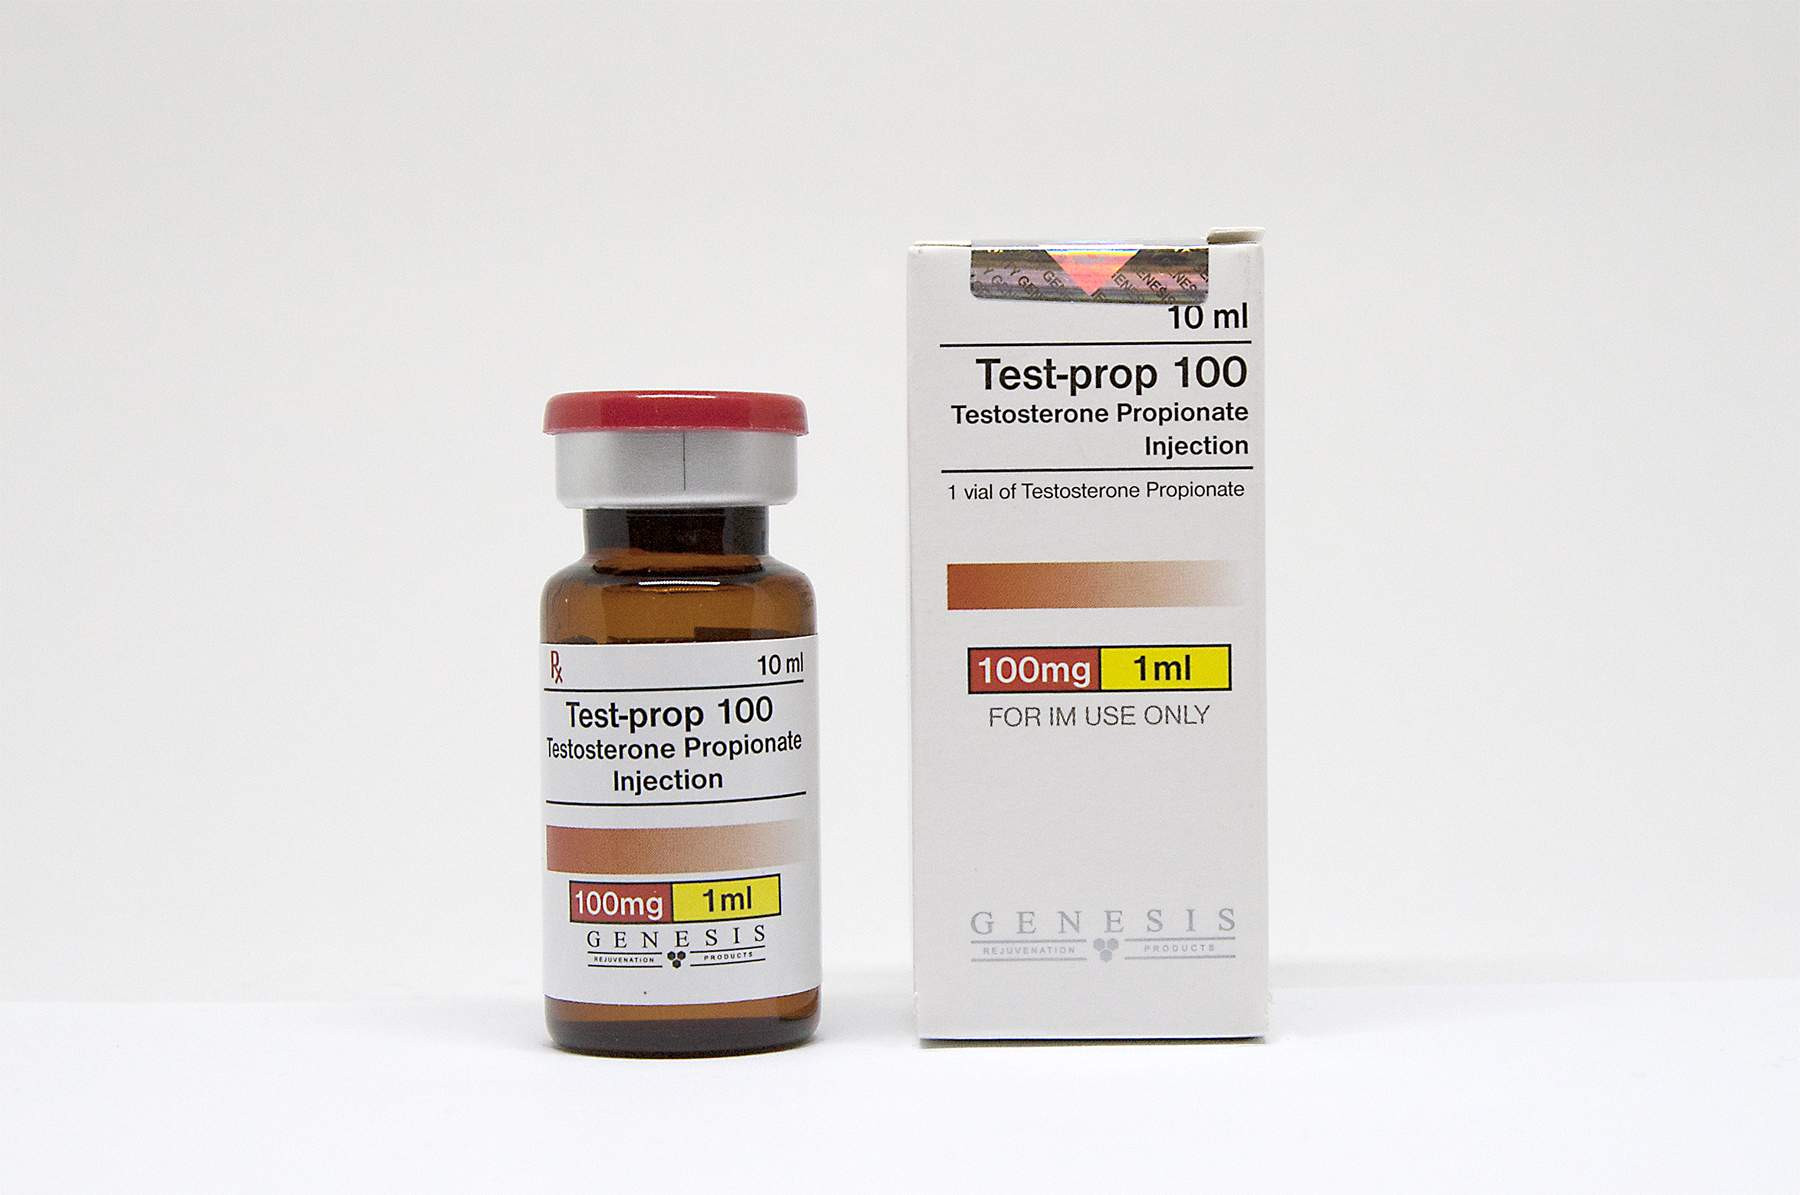 Buy Testosterone Propionate Genesis (Singapore) Usa online image